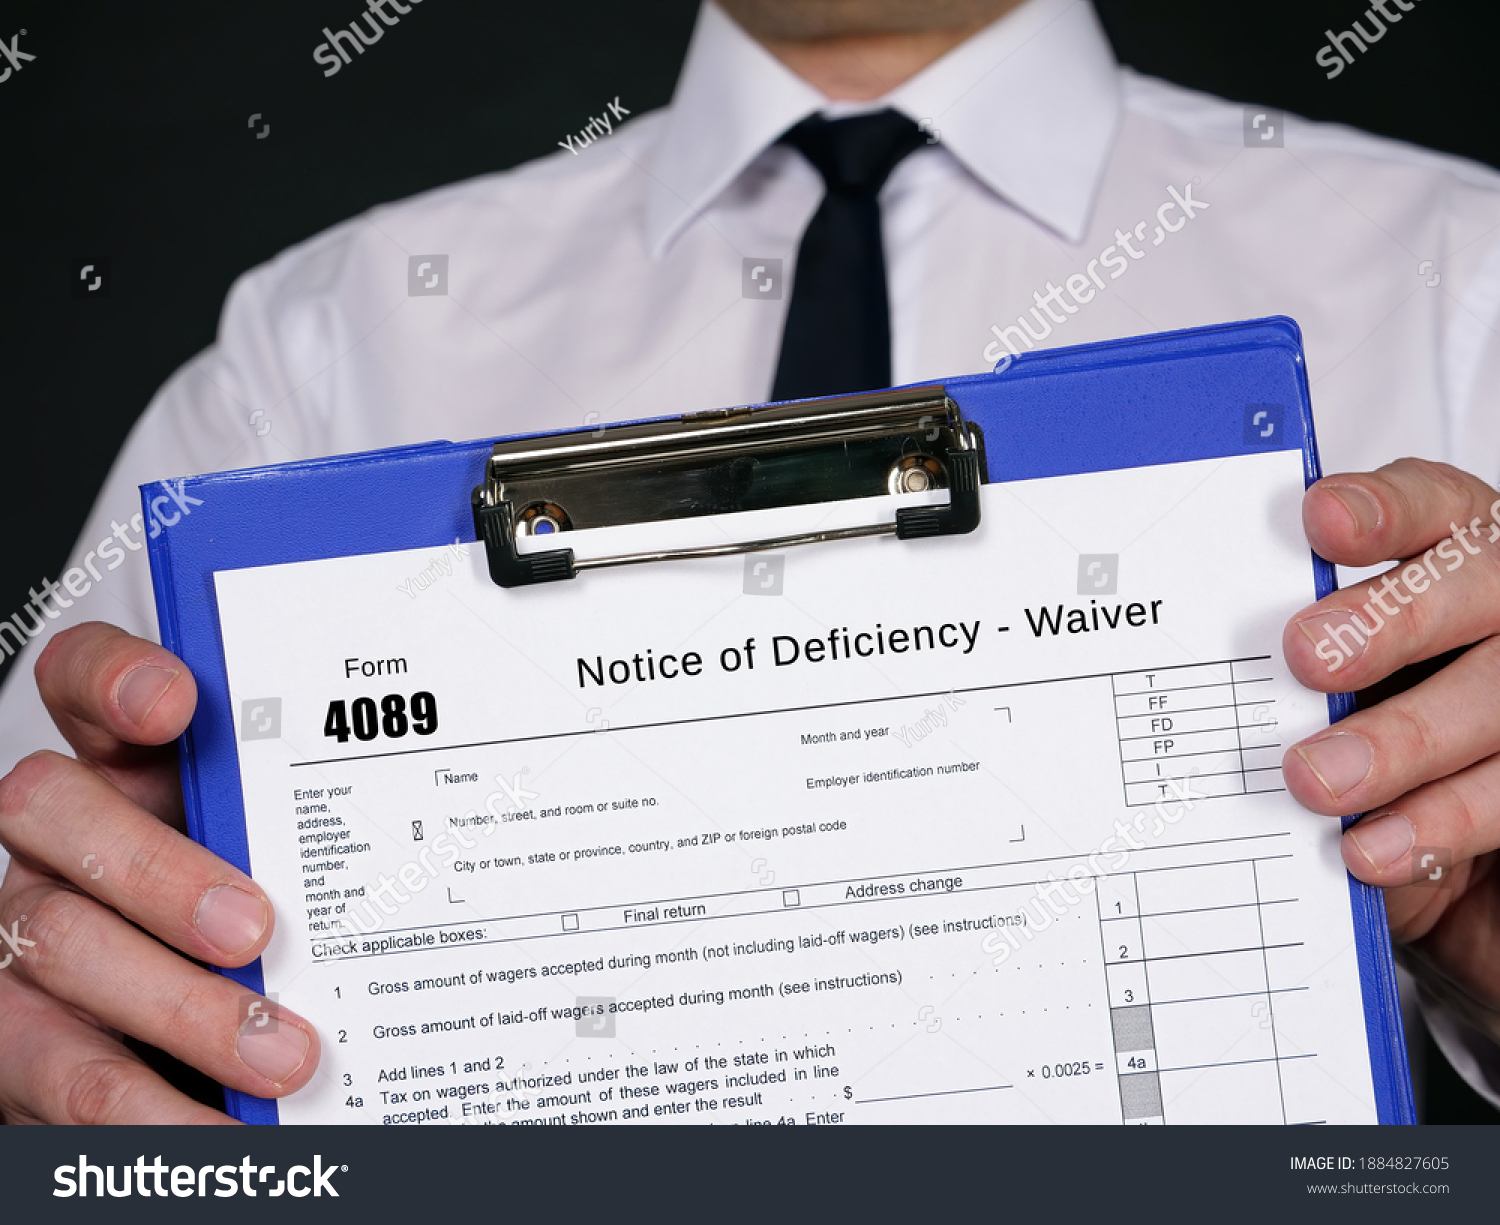 1884827605-form-4089-notice-deficiency-waiver